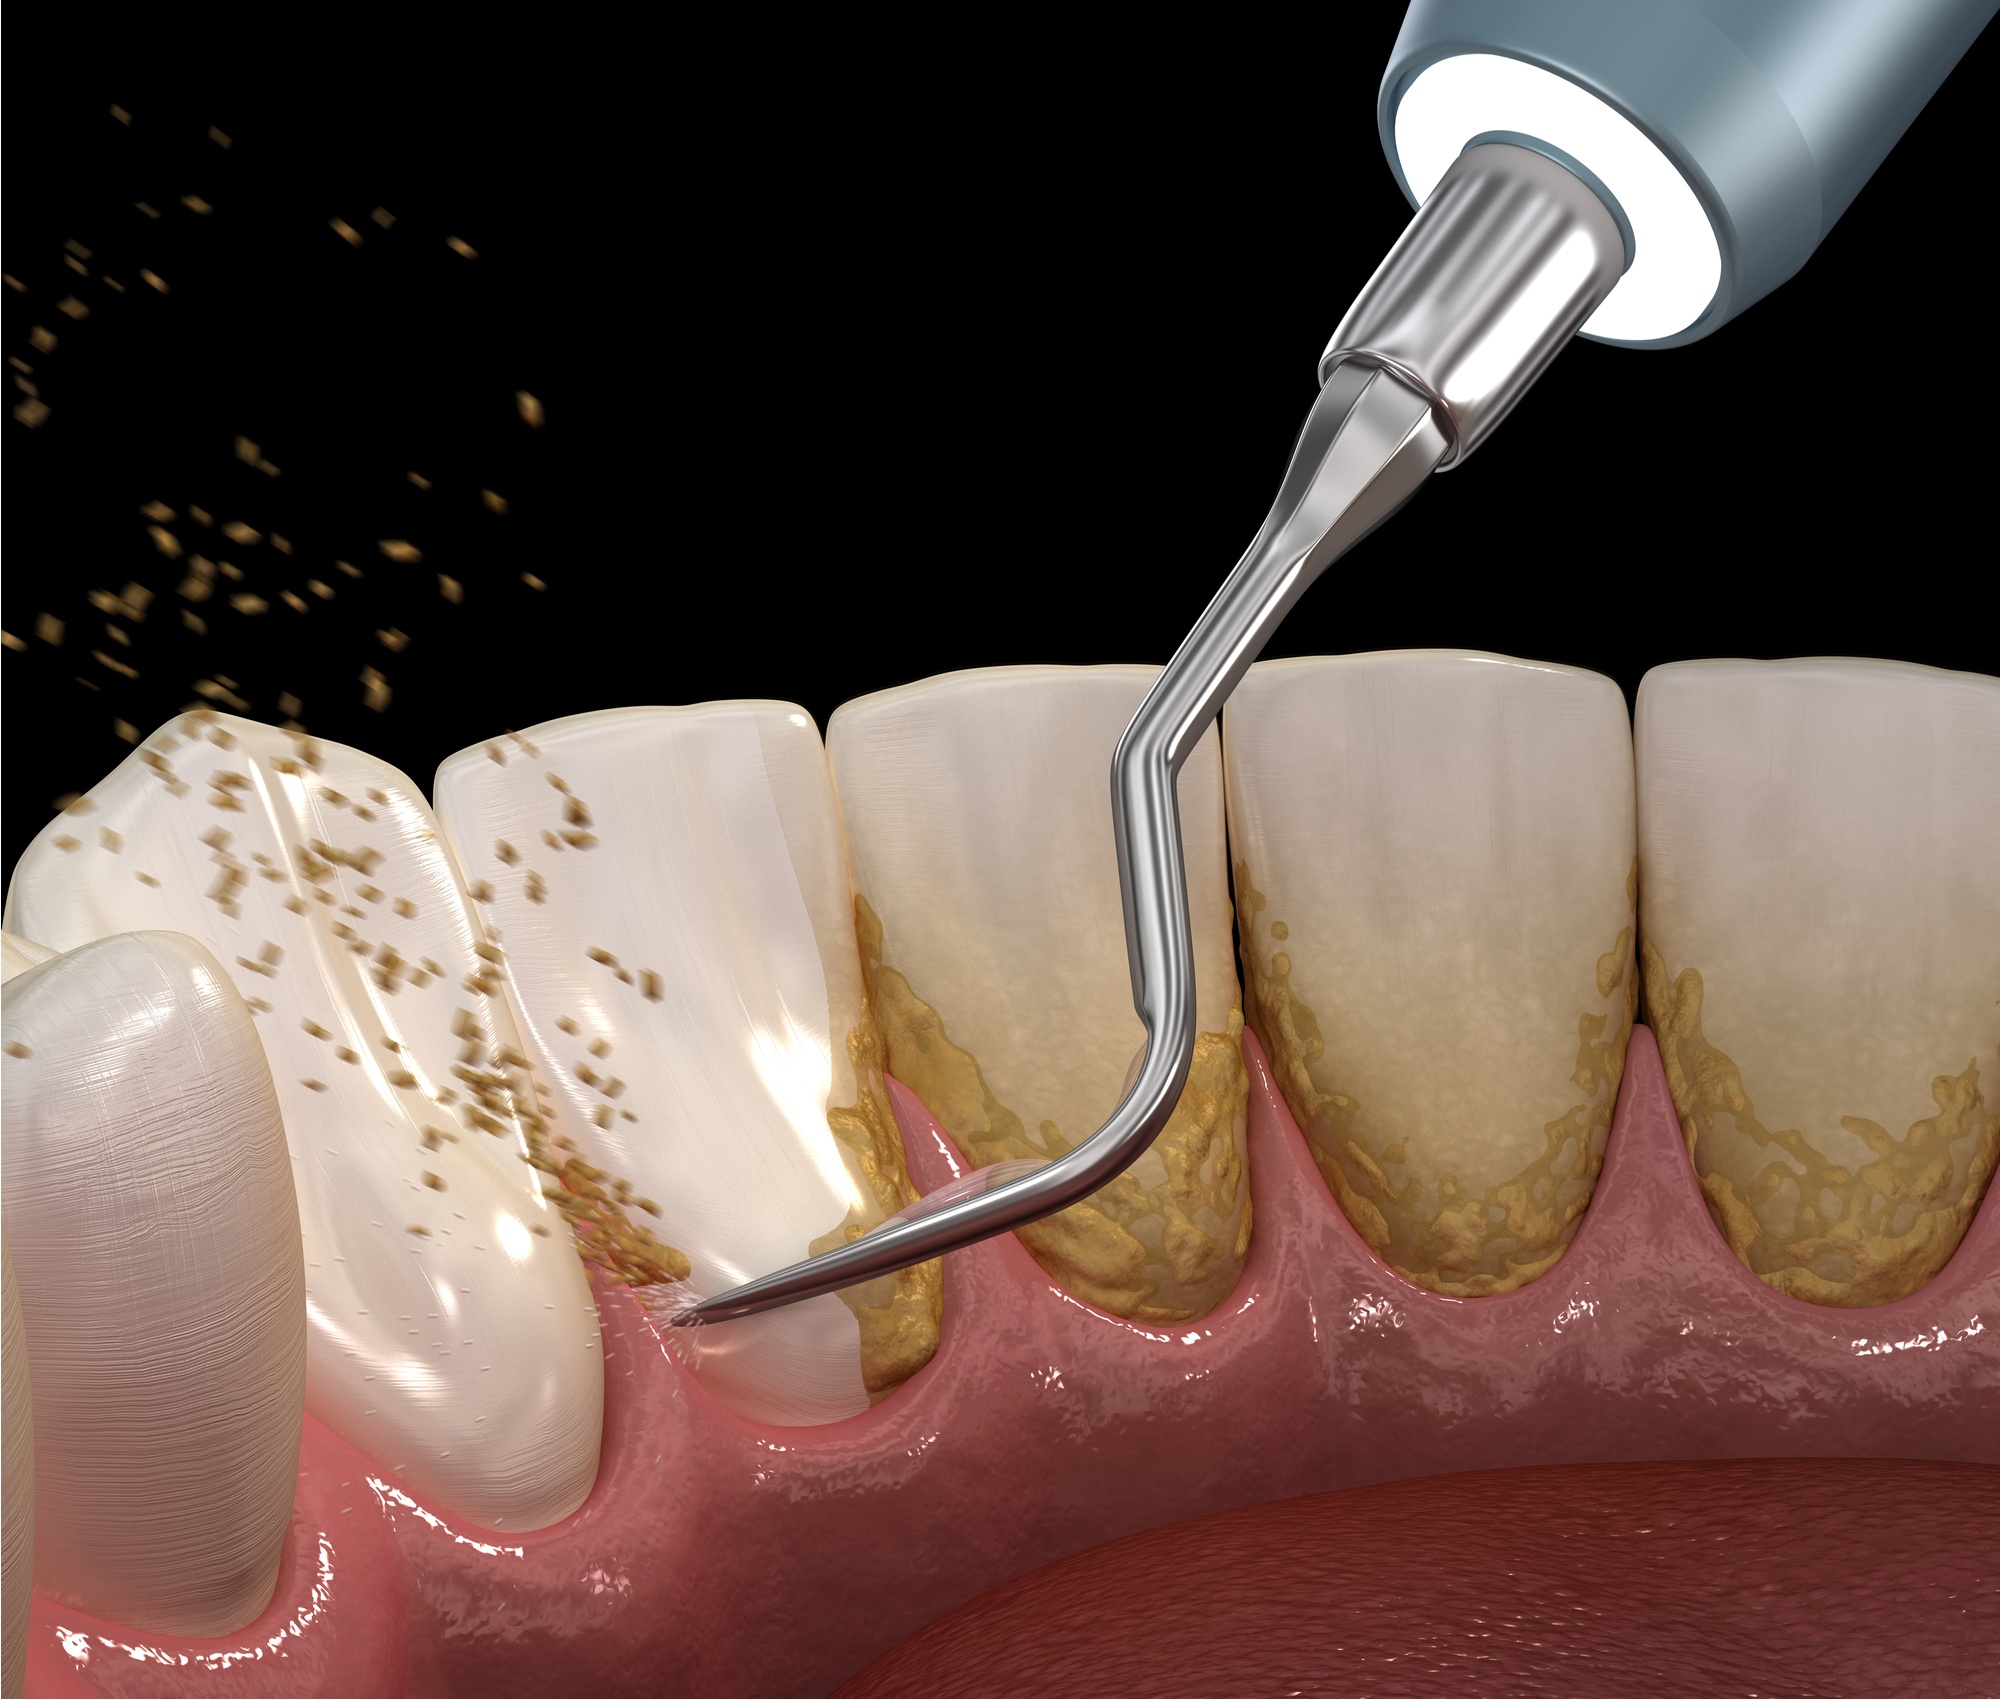  هي عملية تنظيف الاسنان من الجير - اسرار تفسير الاحلام